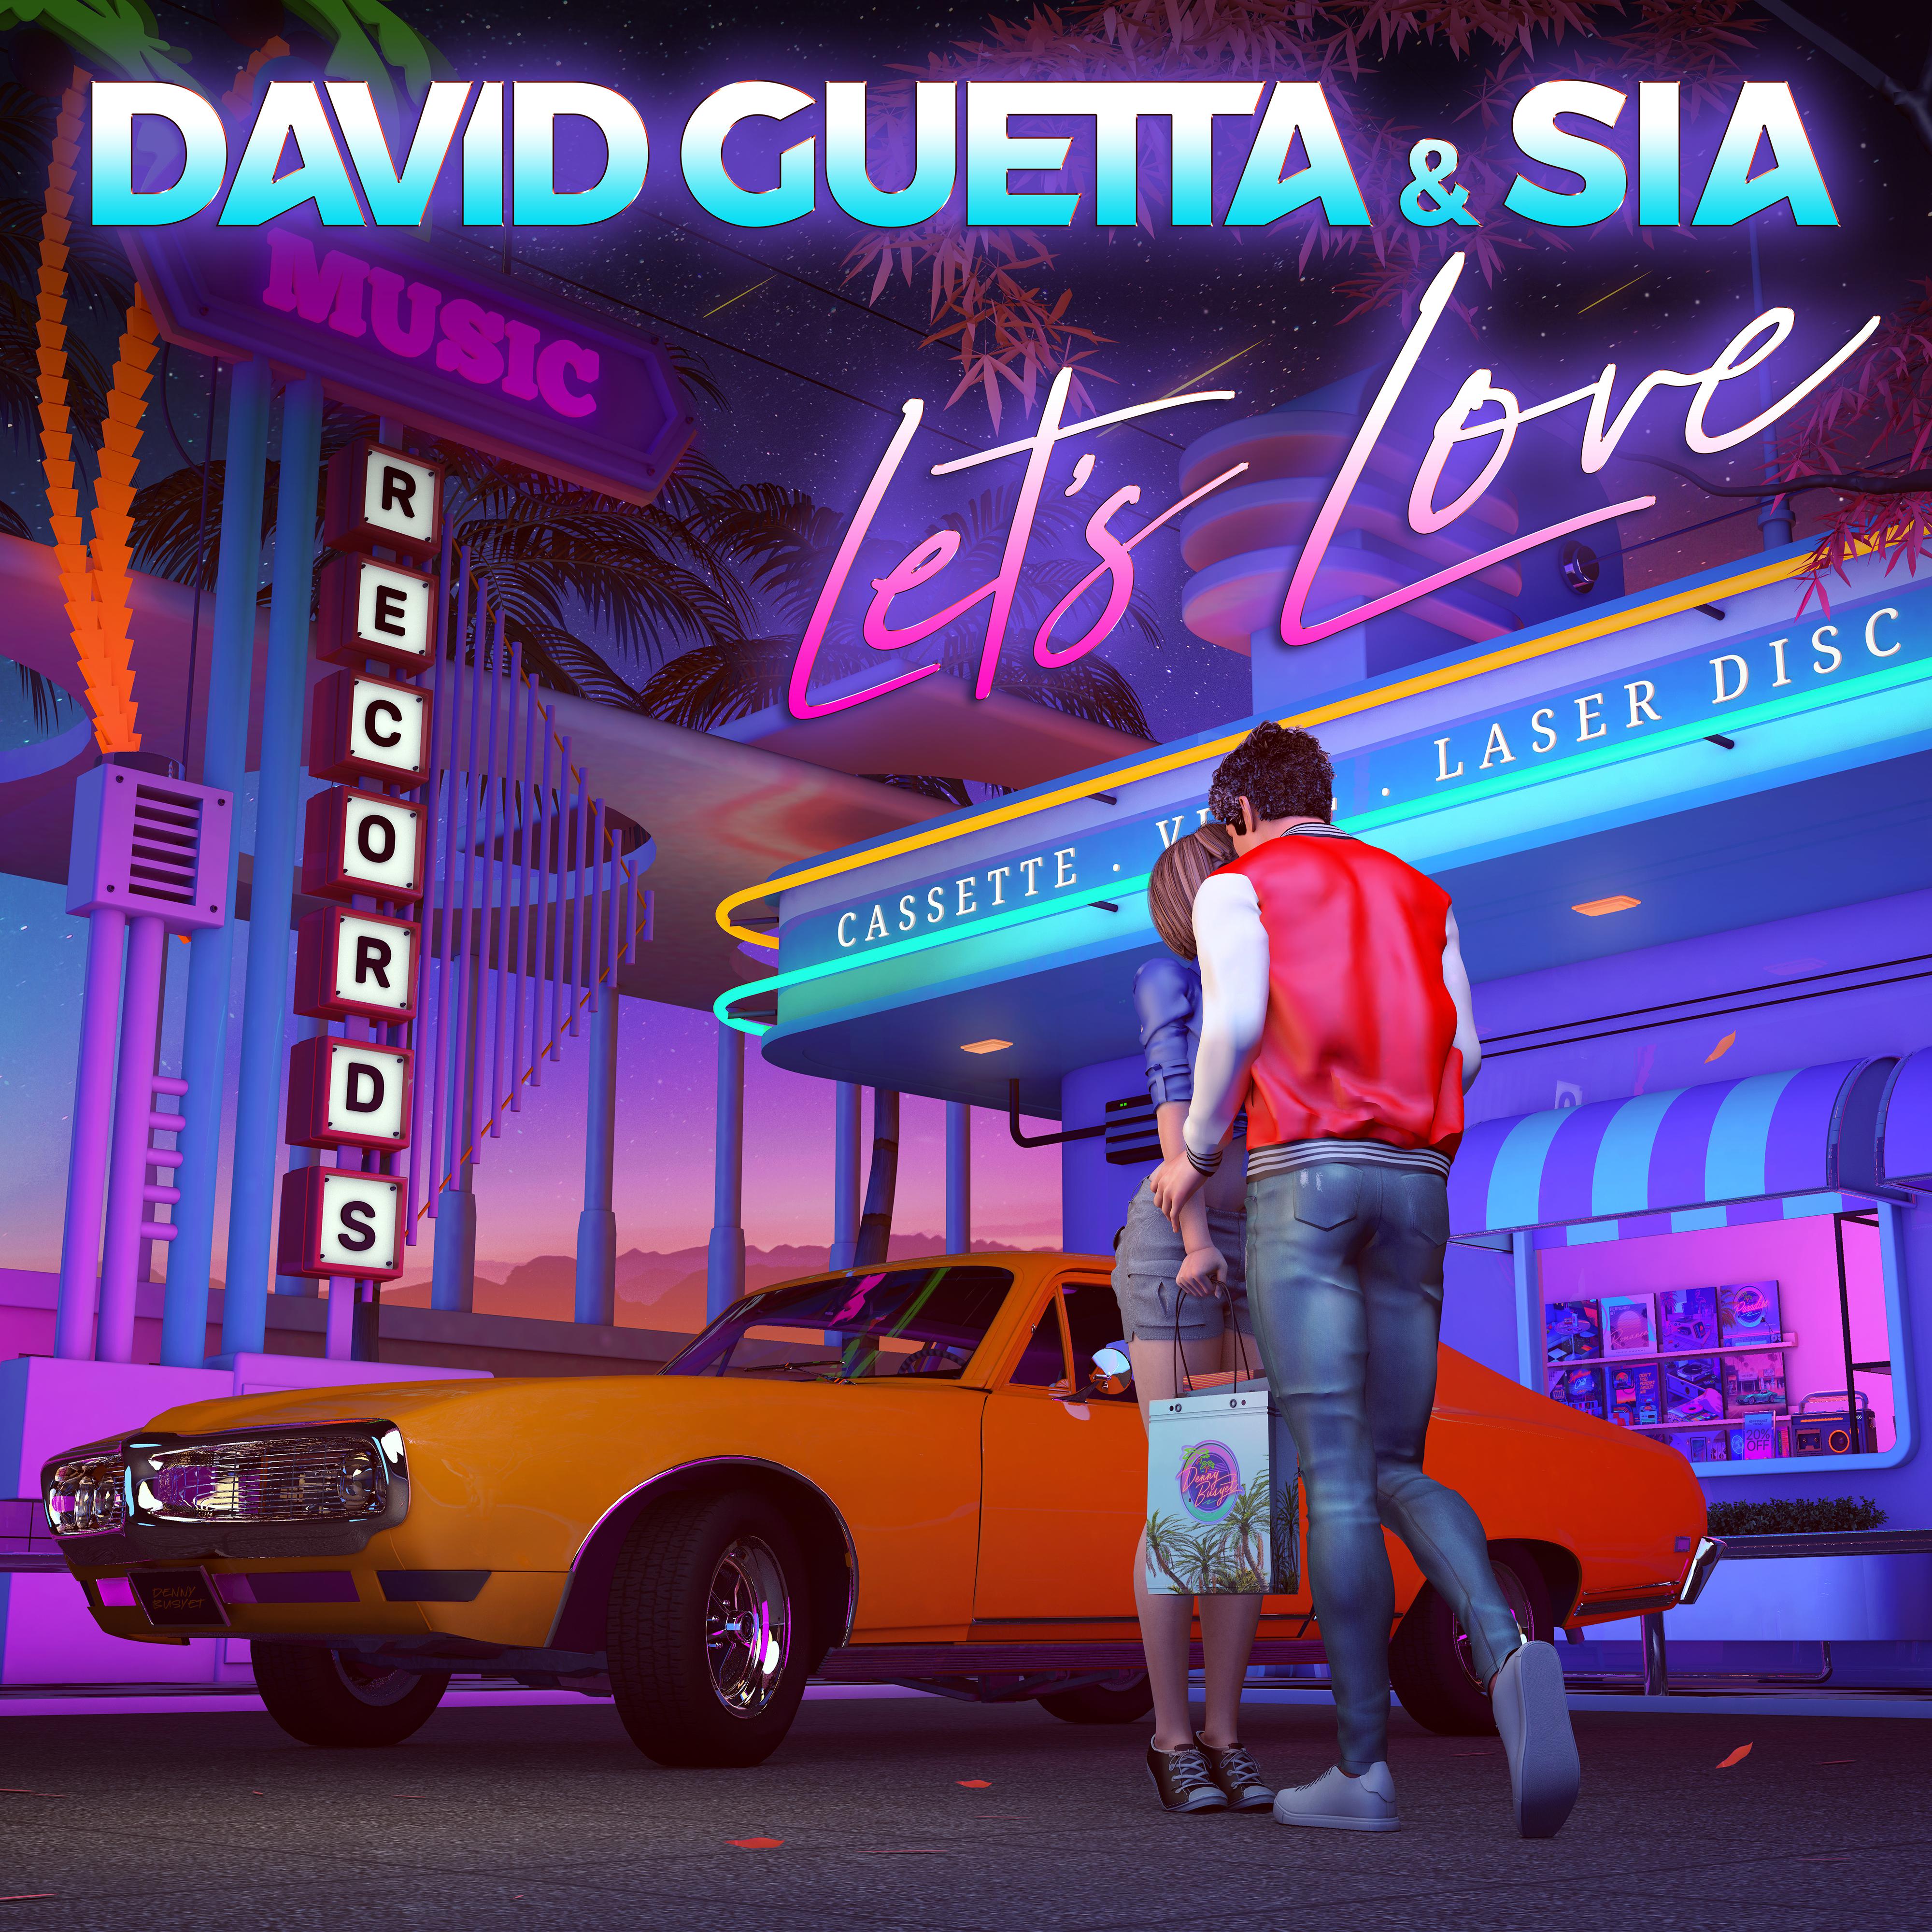 Let's Love歌词 歌手David Guetta / Sia-专辑Let's Love-单曲《Let's Love》LRC歌词下载